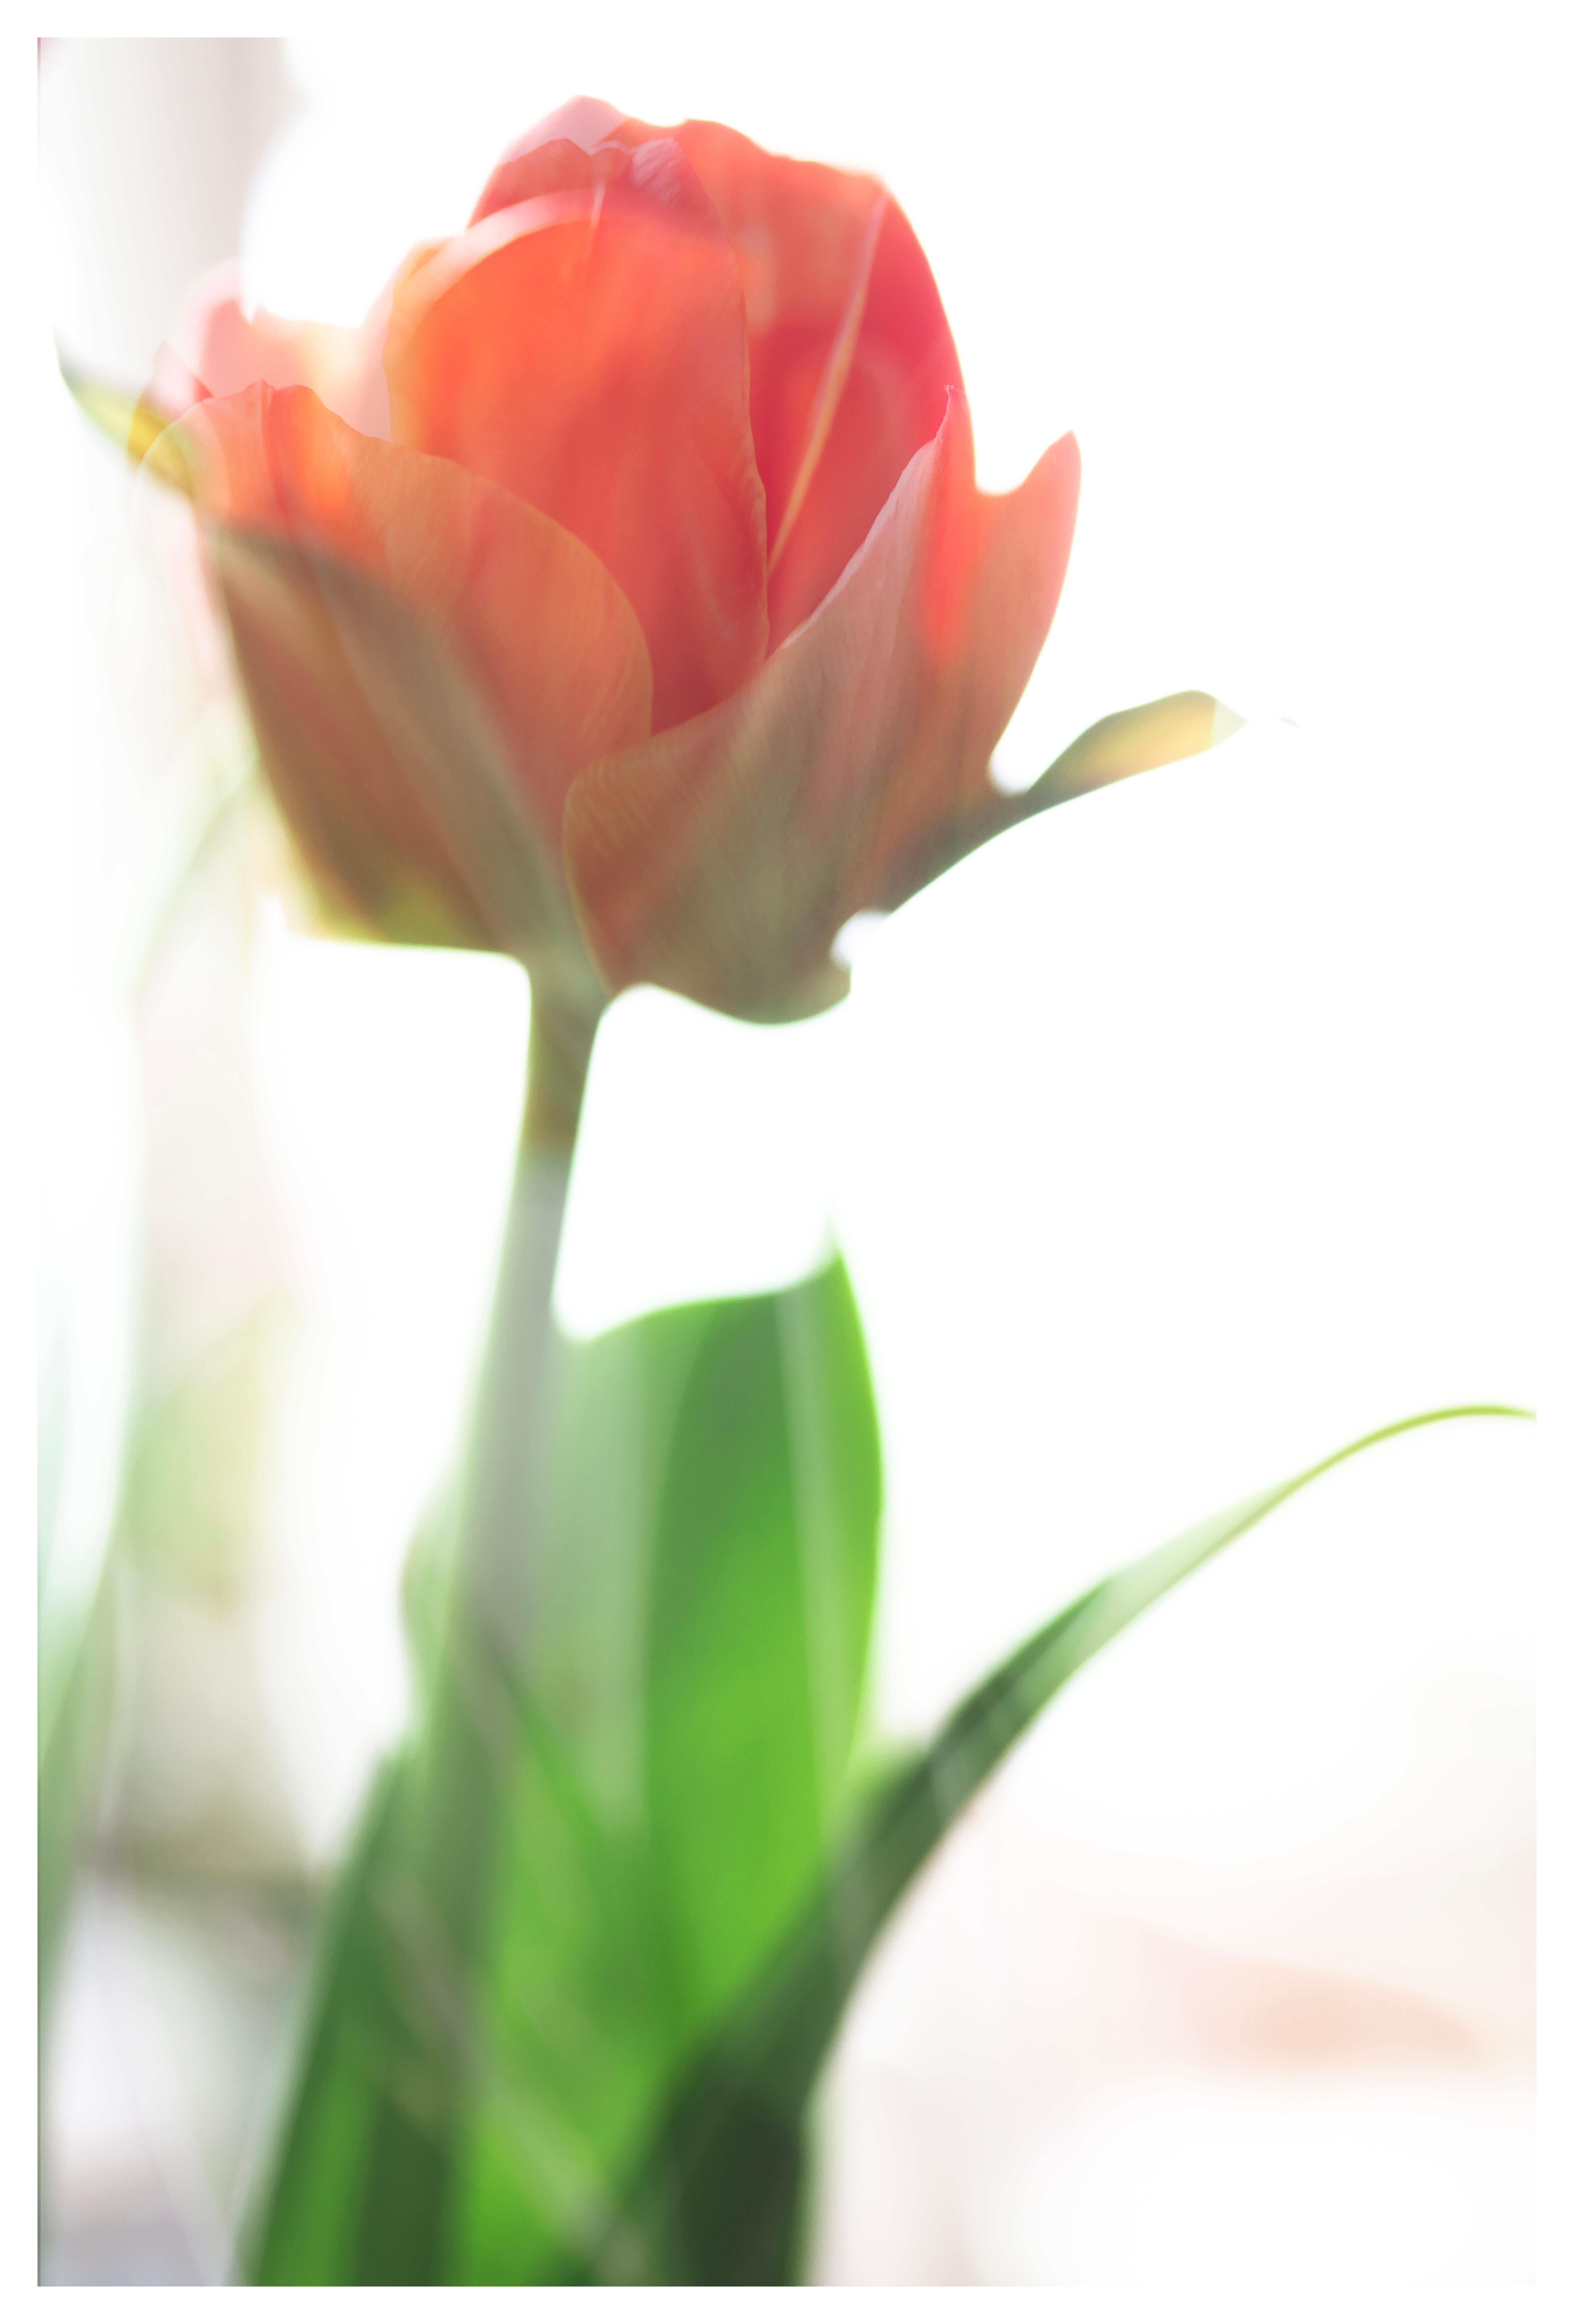 Color Photograph Sophia Milligan - Tulip Awakening, photographie à grande échelle audacieuse fleur pastel rouge orange blanc